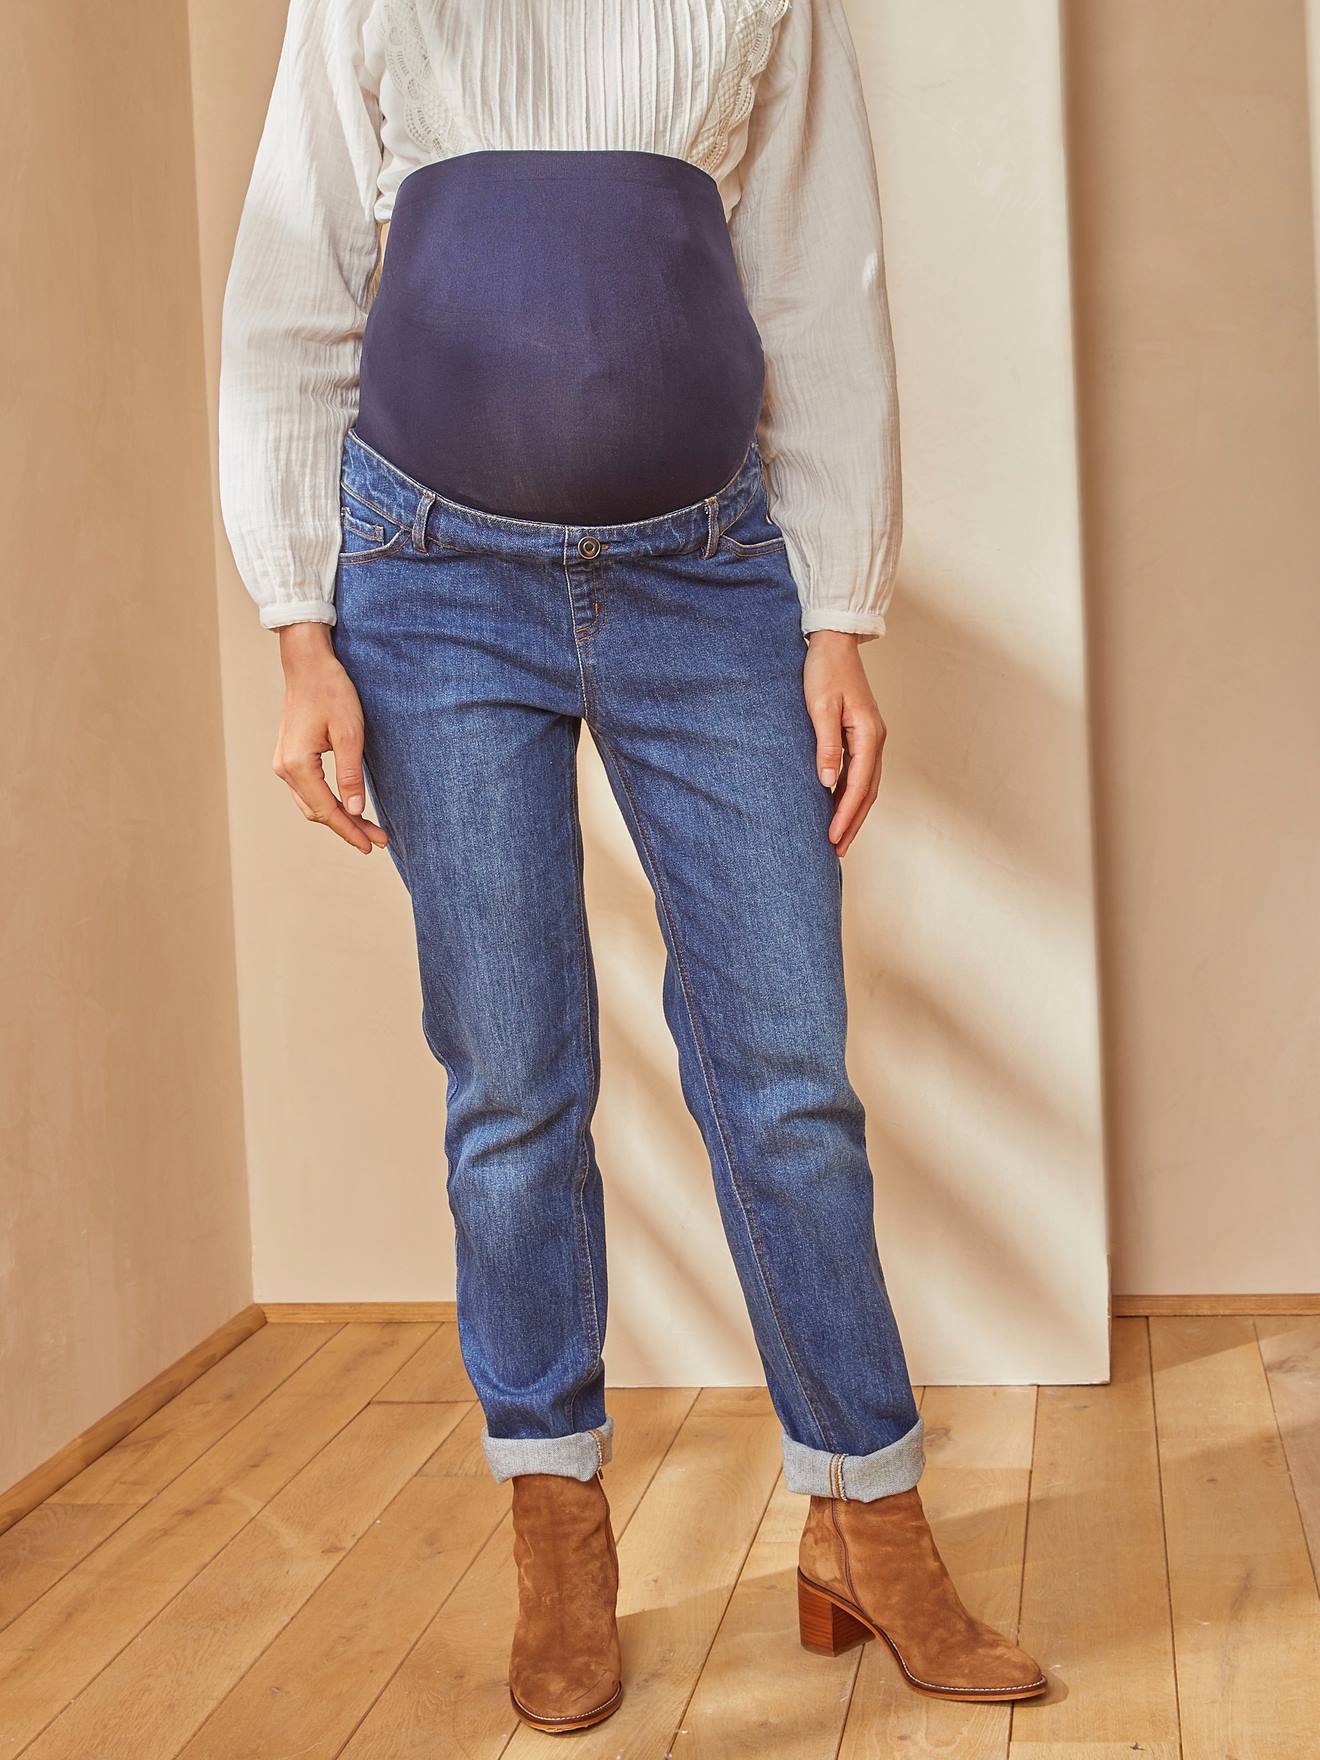 Jeans vetements femme maternite grossesse taille 42